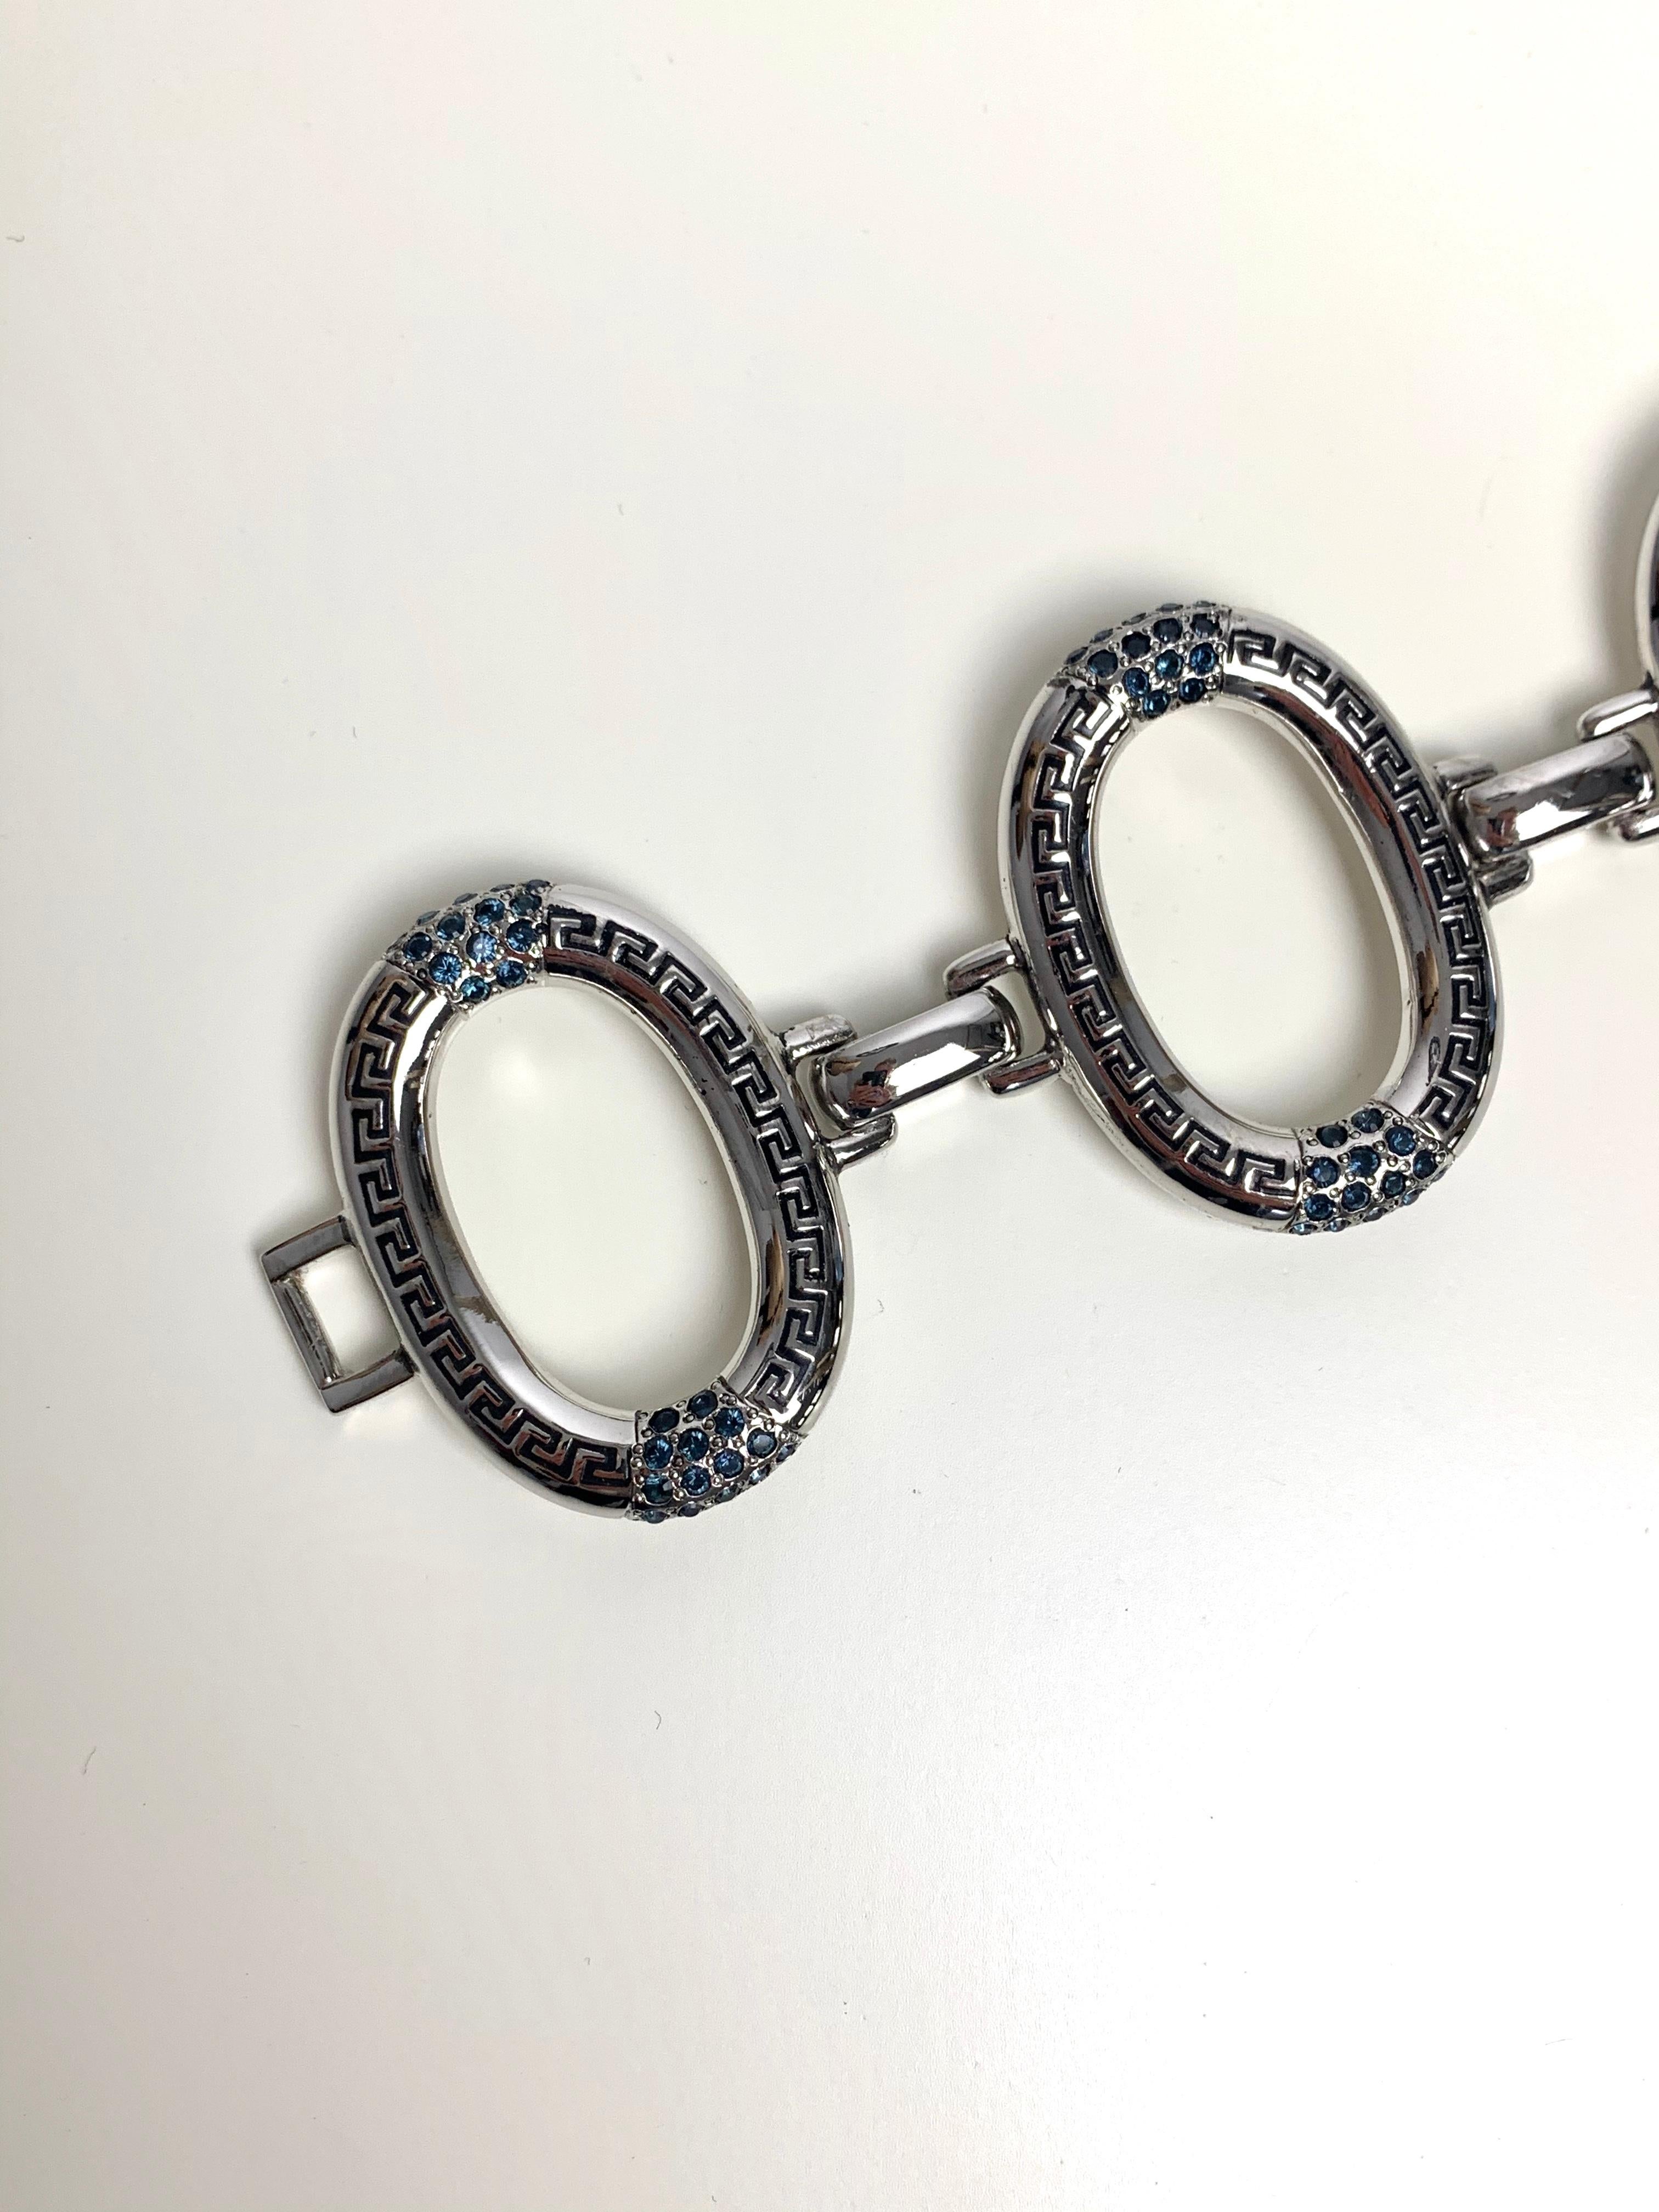 Dieses ovale Armband von Gianni Versace besteht aus großen, ovalen Gliedern, in die das Motiv einer griechischen Fliese eingraviert ist. Sie haben auch dunkelblaue Steine am oberen und unteren Ende, die einen schönen Kontrast zum silbernen Armband